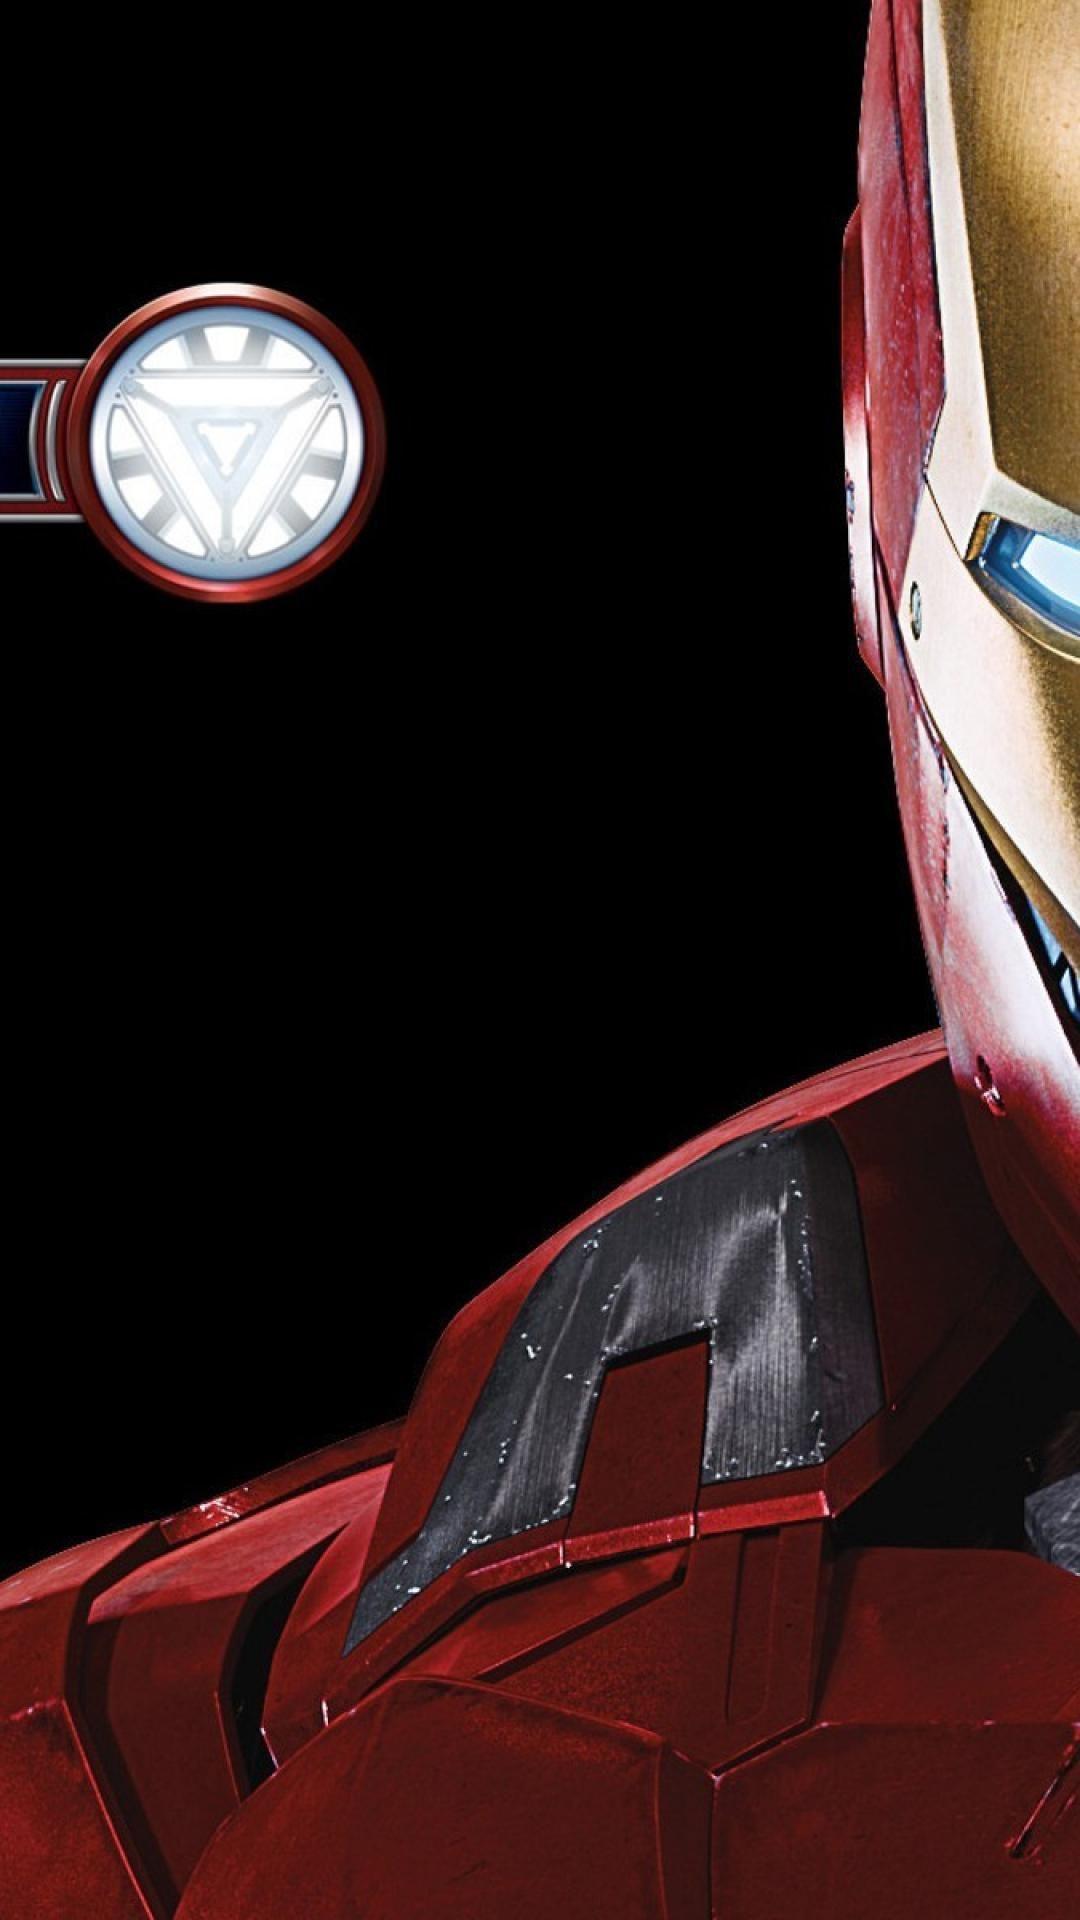 1080x1920 Iron man the avengers (movie) hình nền